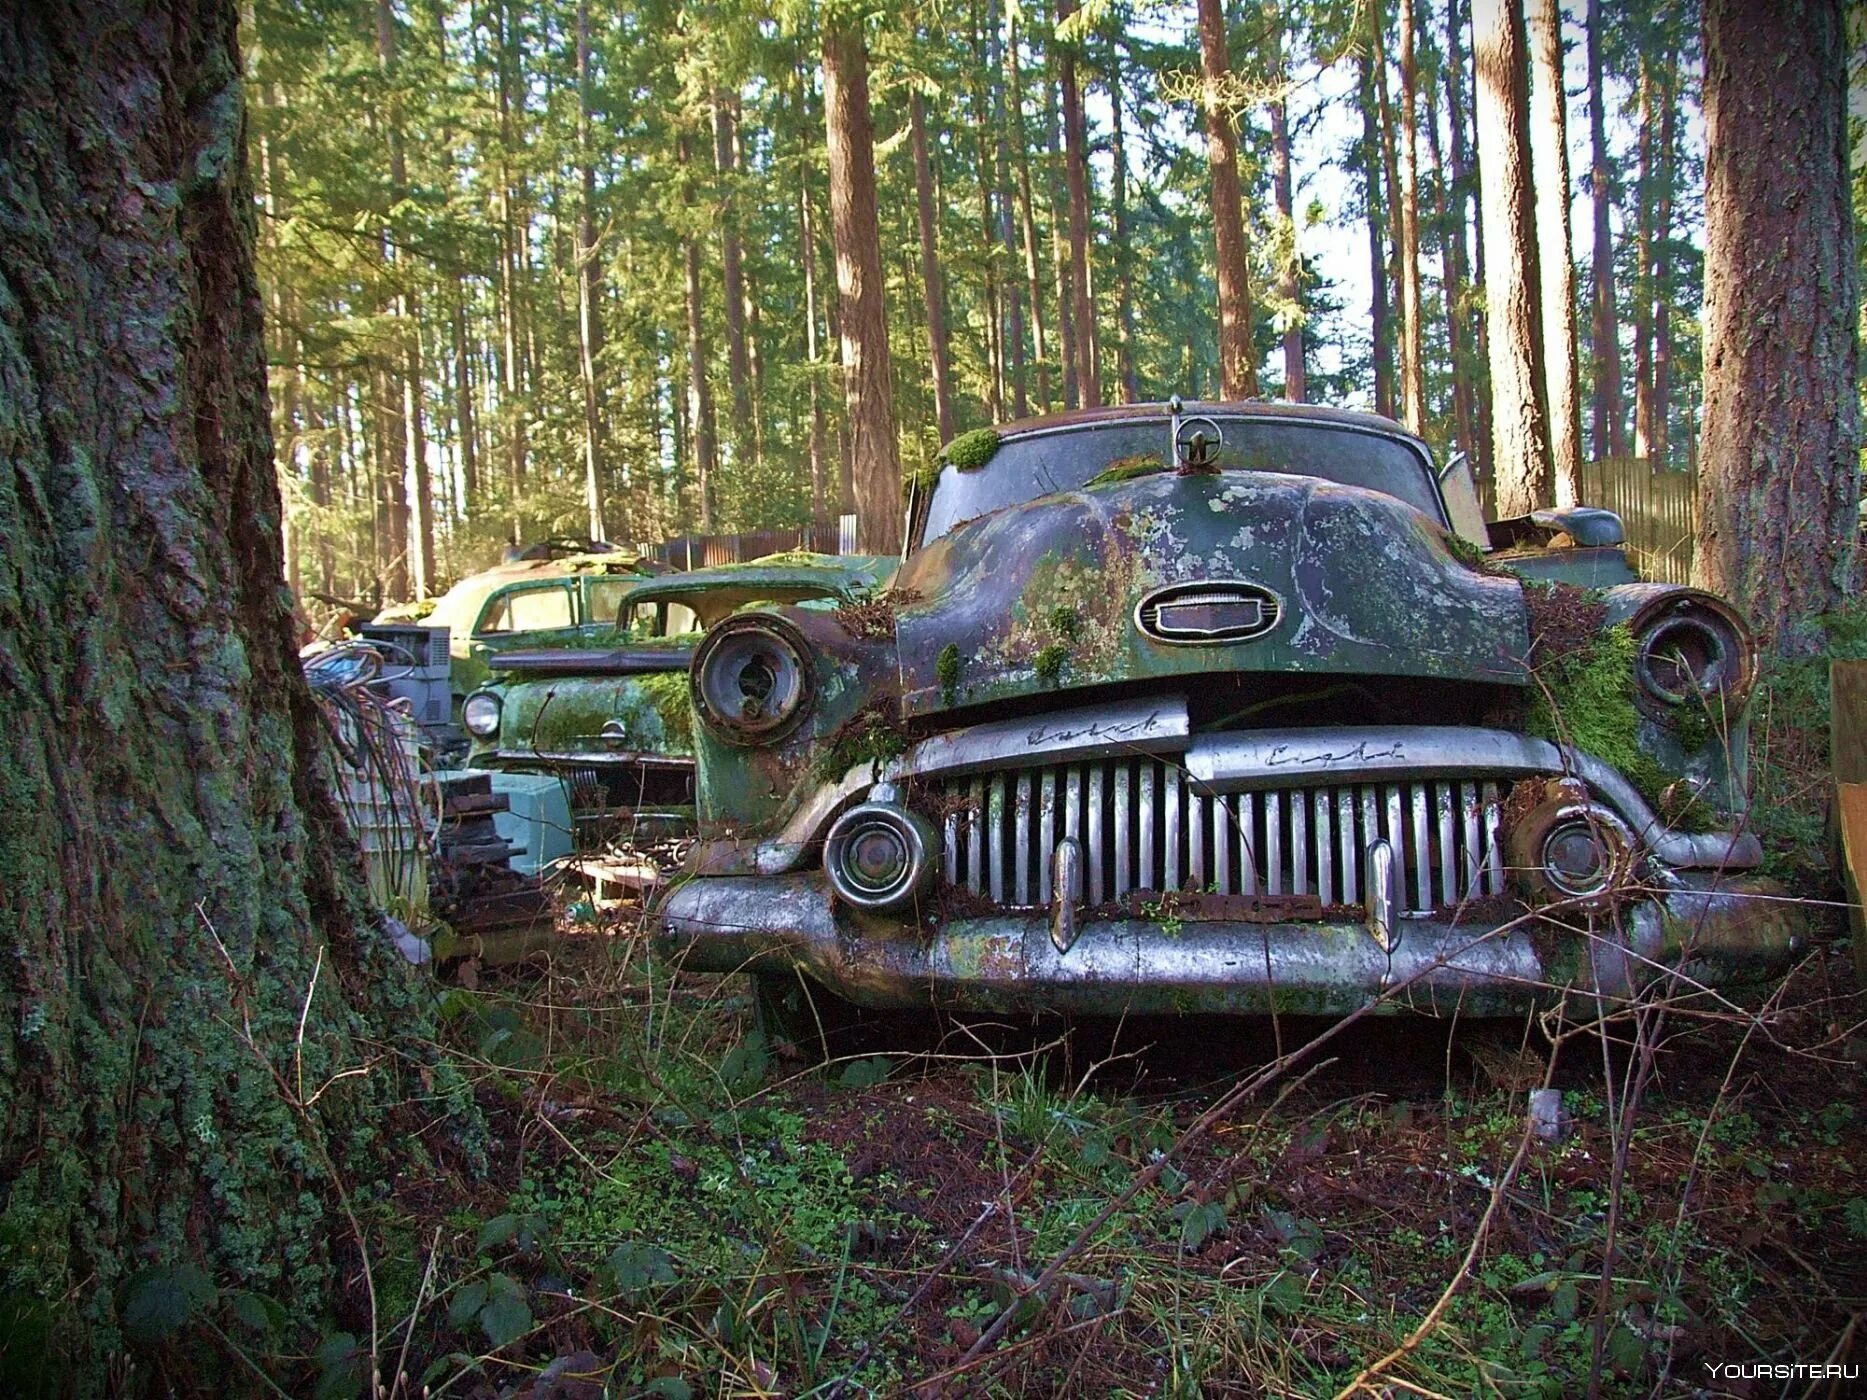 Забытые форумах. Старые брошенные автомобили. Кладбище старых машин. Заброшенные ретро автомобили. Заброшенные машины в лесу.